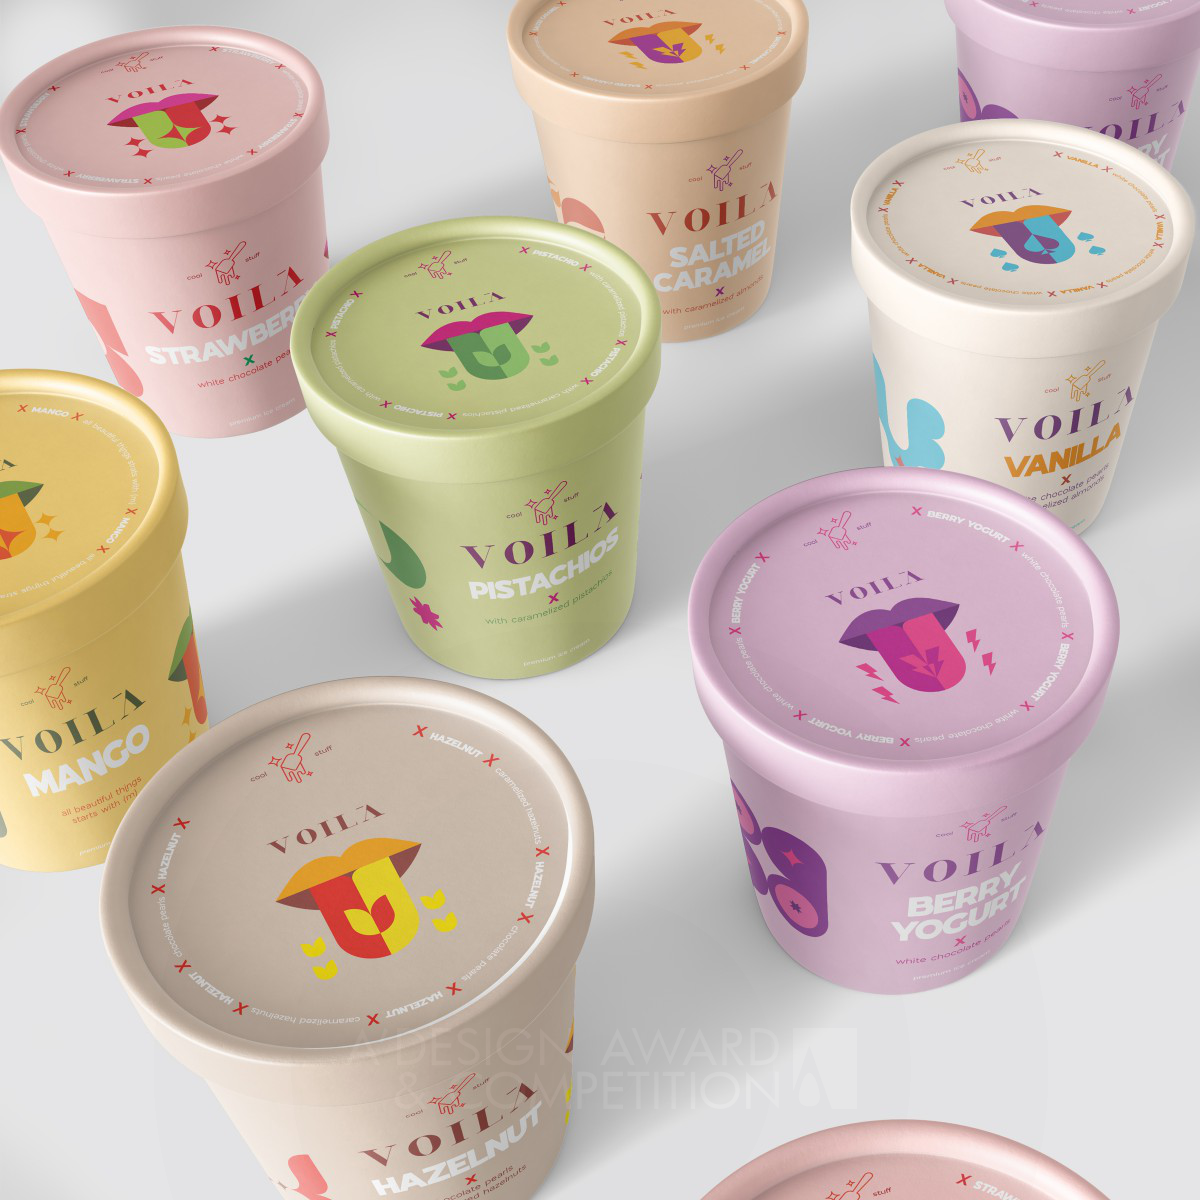 Voila Cool Stuff: Diseño Innovador de Envases de Helado